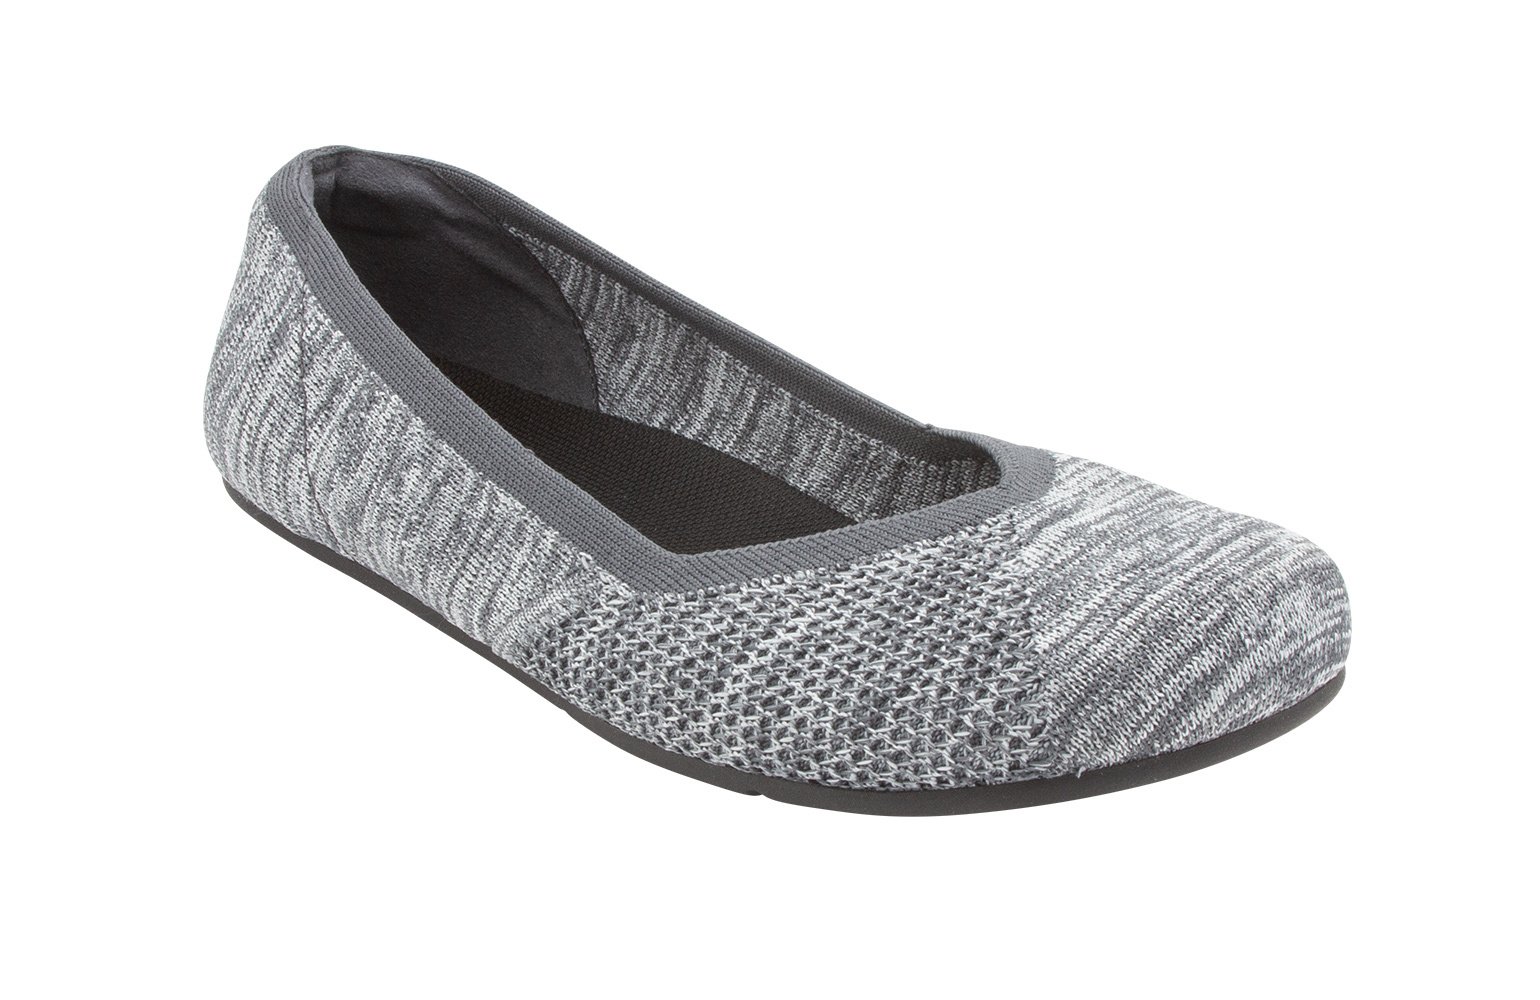 Xero Shoes, Phoenix Knit - PHX-KGRY - gray, dames, maat 42,5 eu